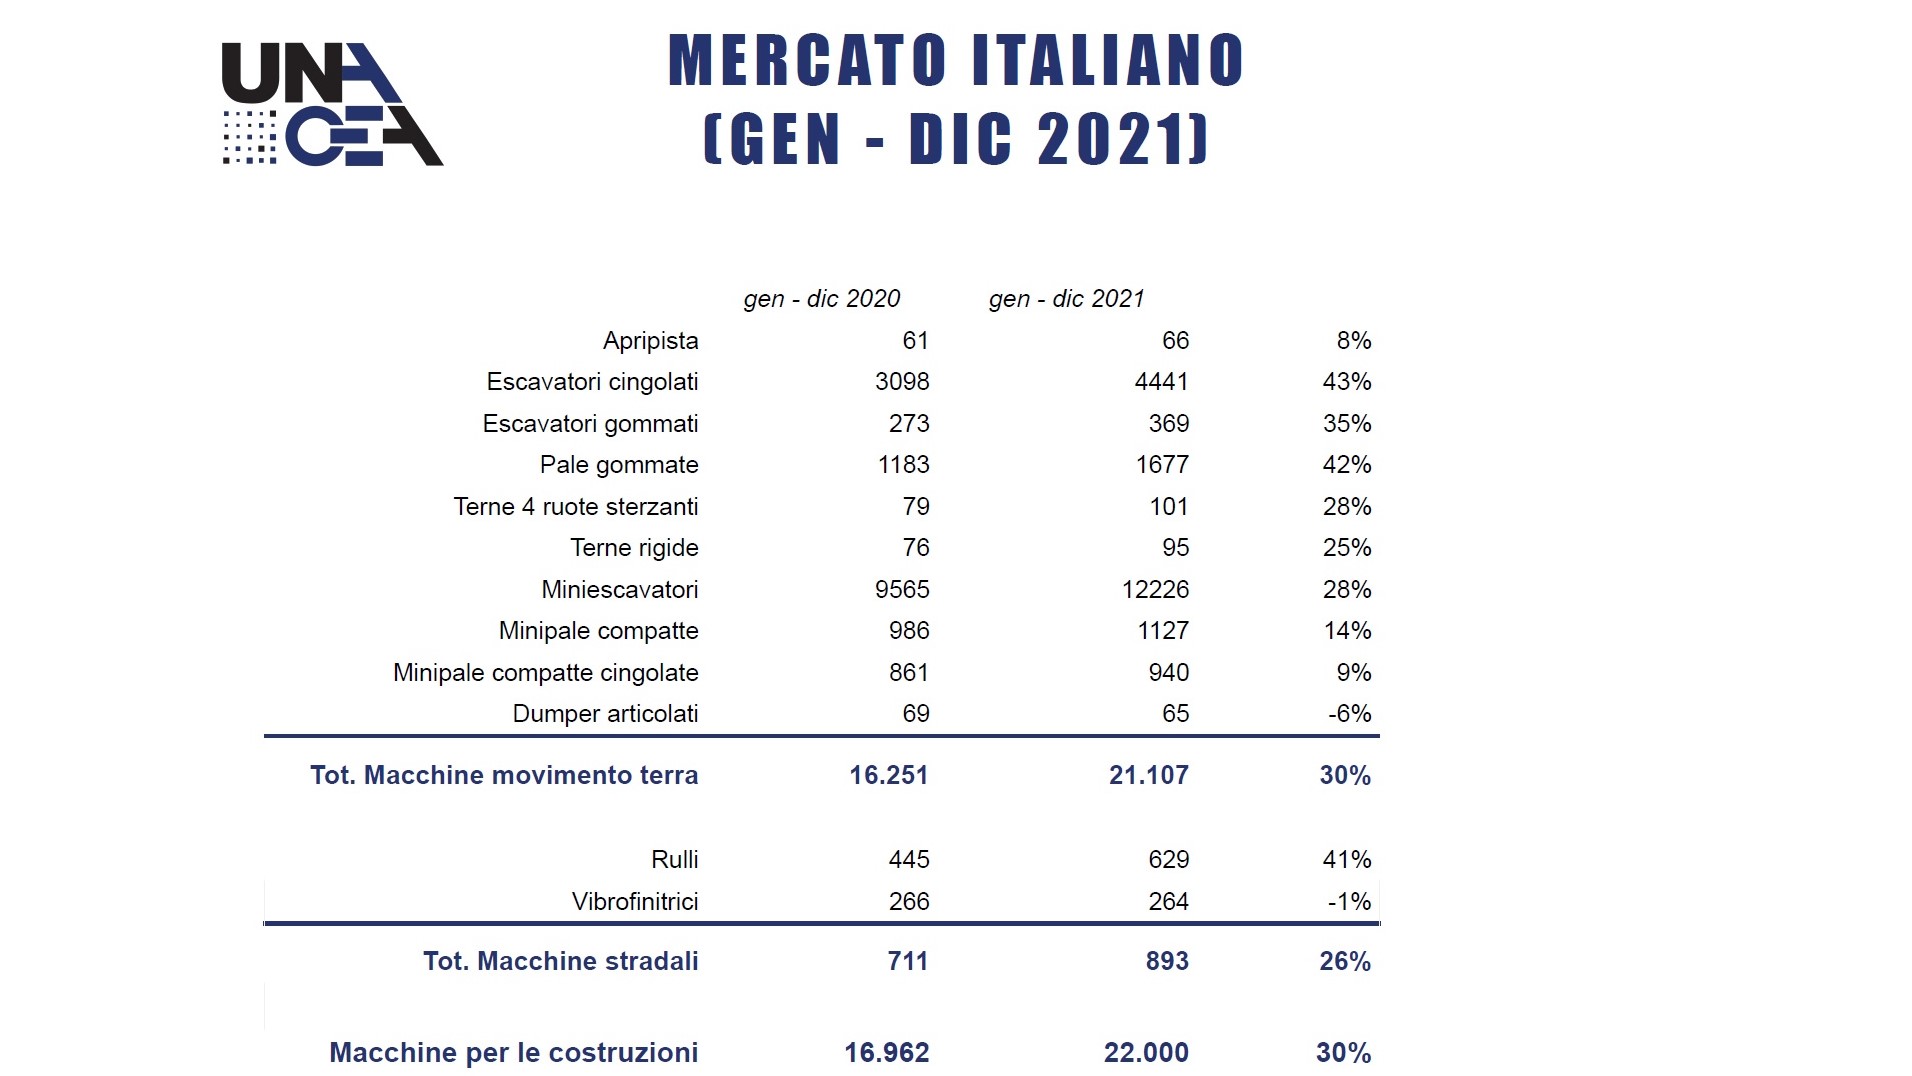 Il mercato italiano delle macchine da costruzione fra gennaio e dicembre 2021